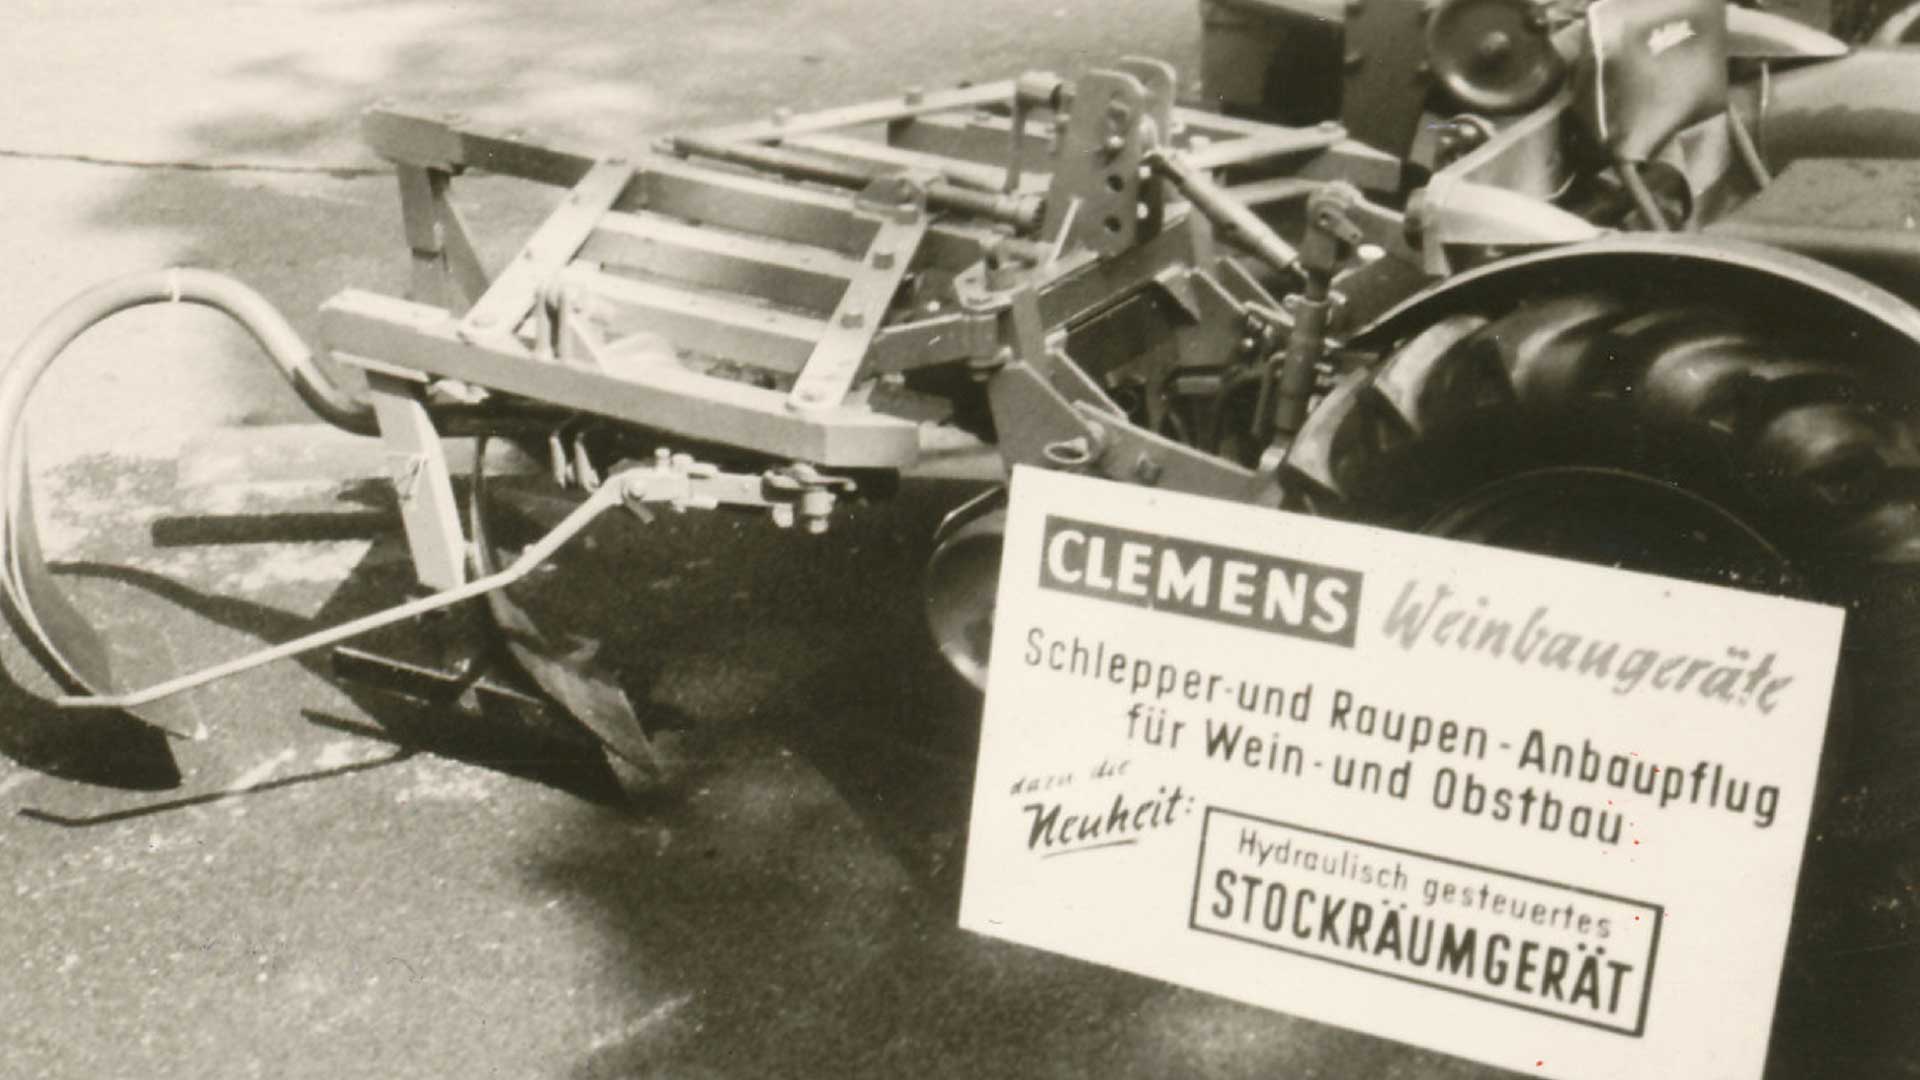 CLEMENS 1966 La première machine entièrement hydraulique